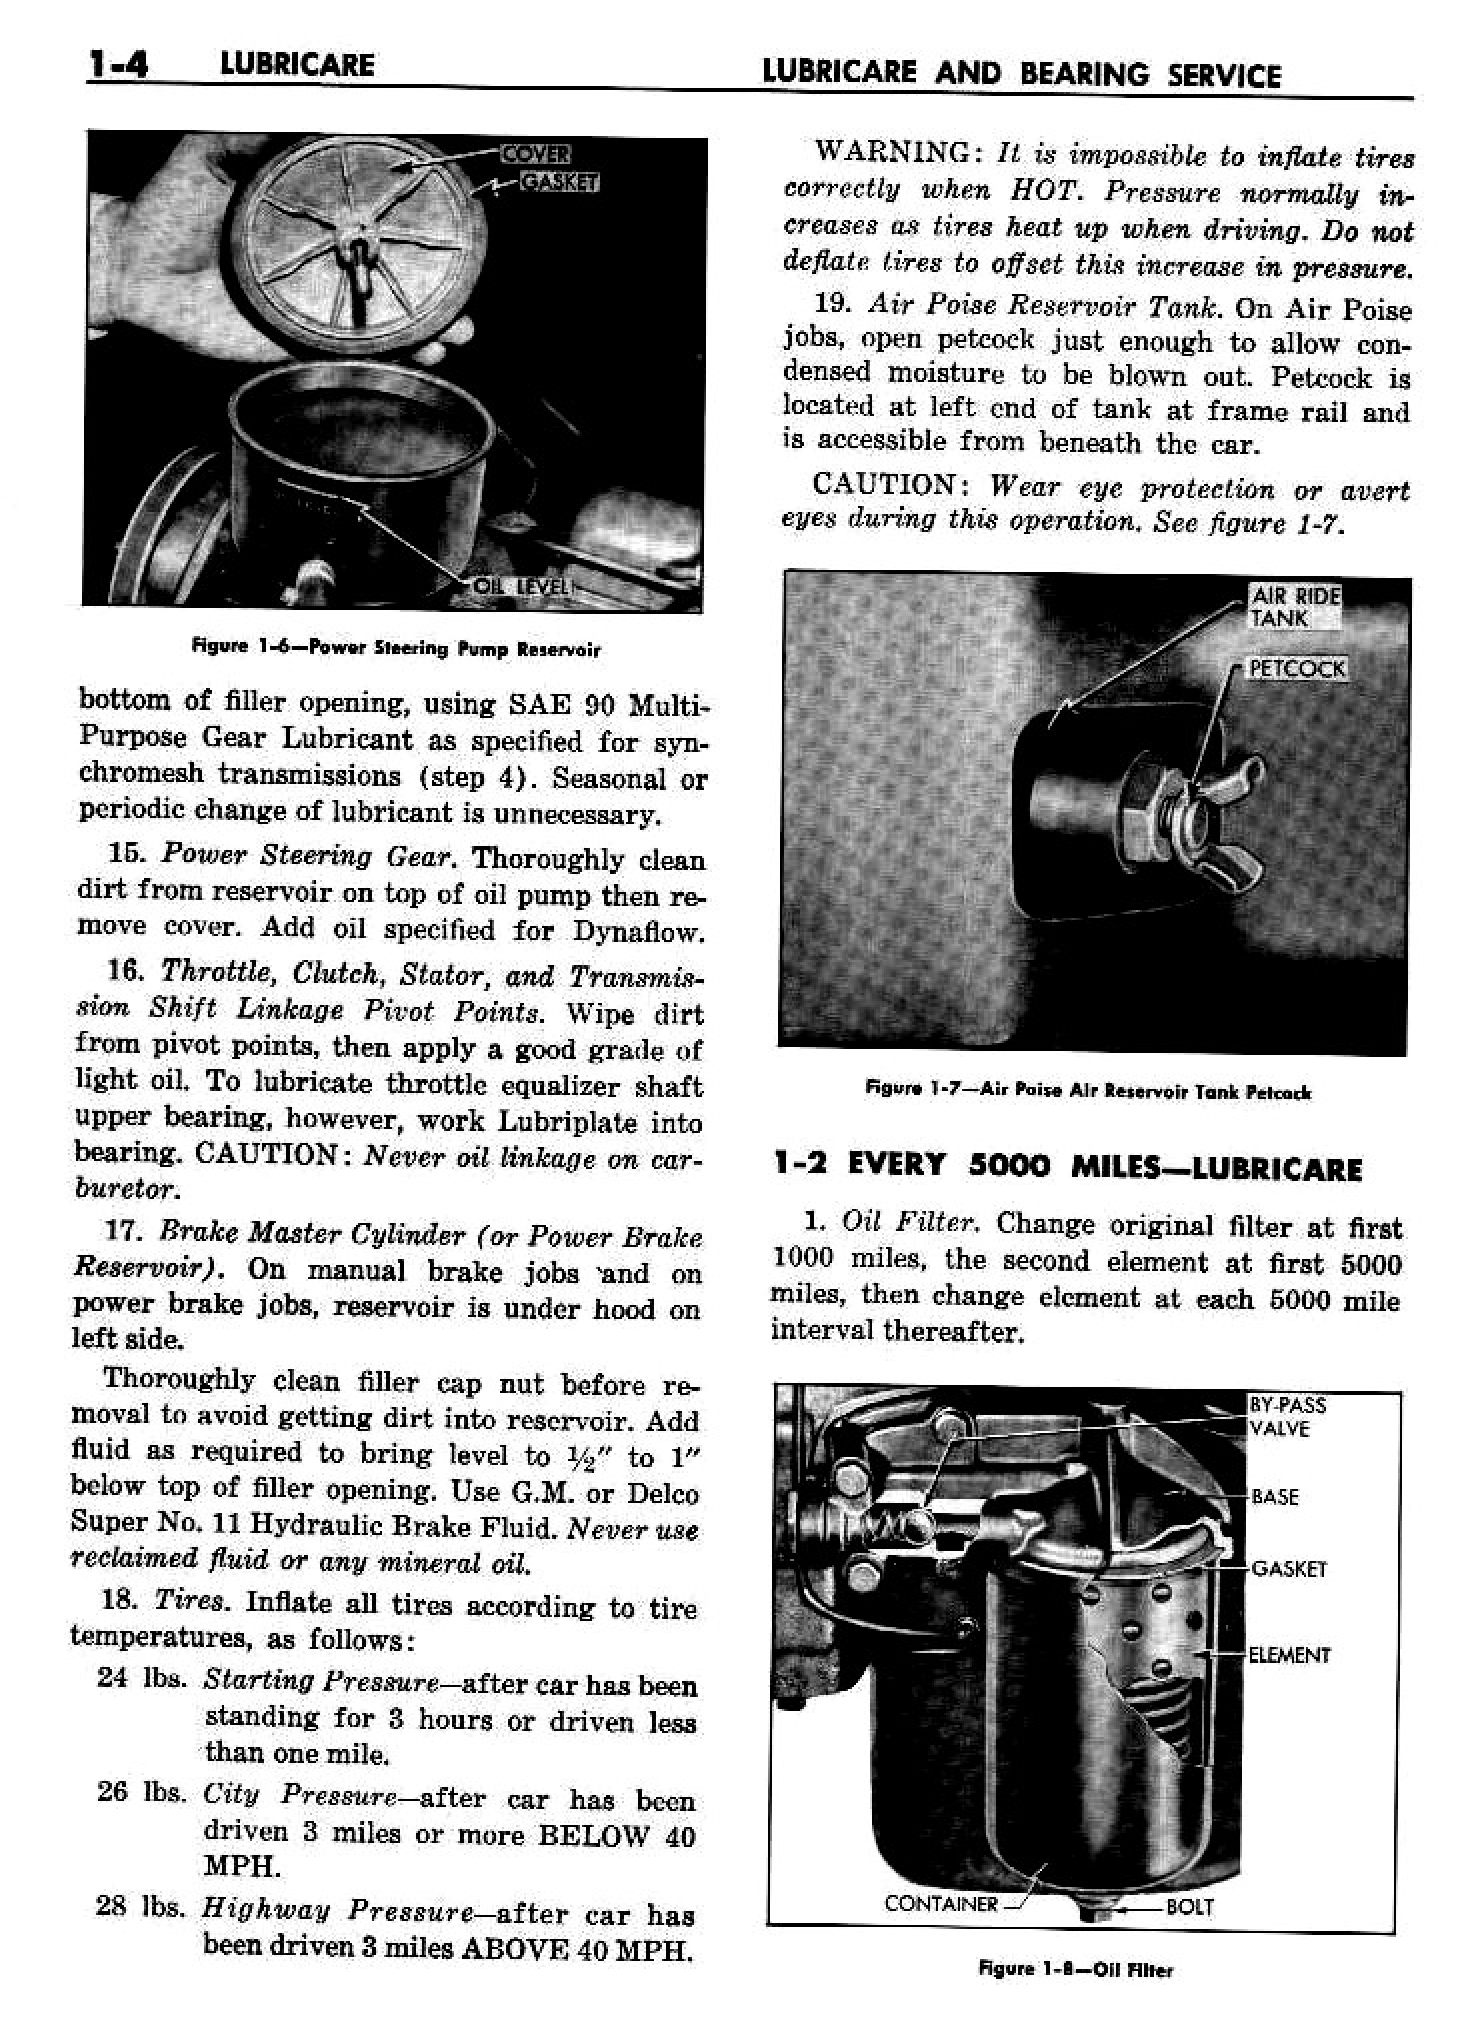 n_02 1958 Buick Shop Manual - Lubricare_4.jpg